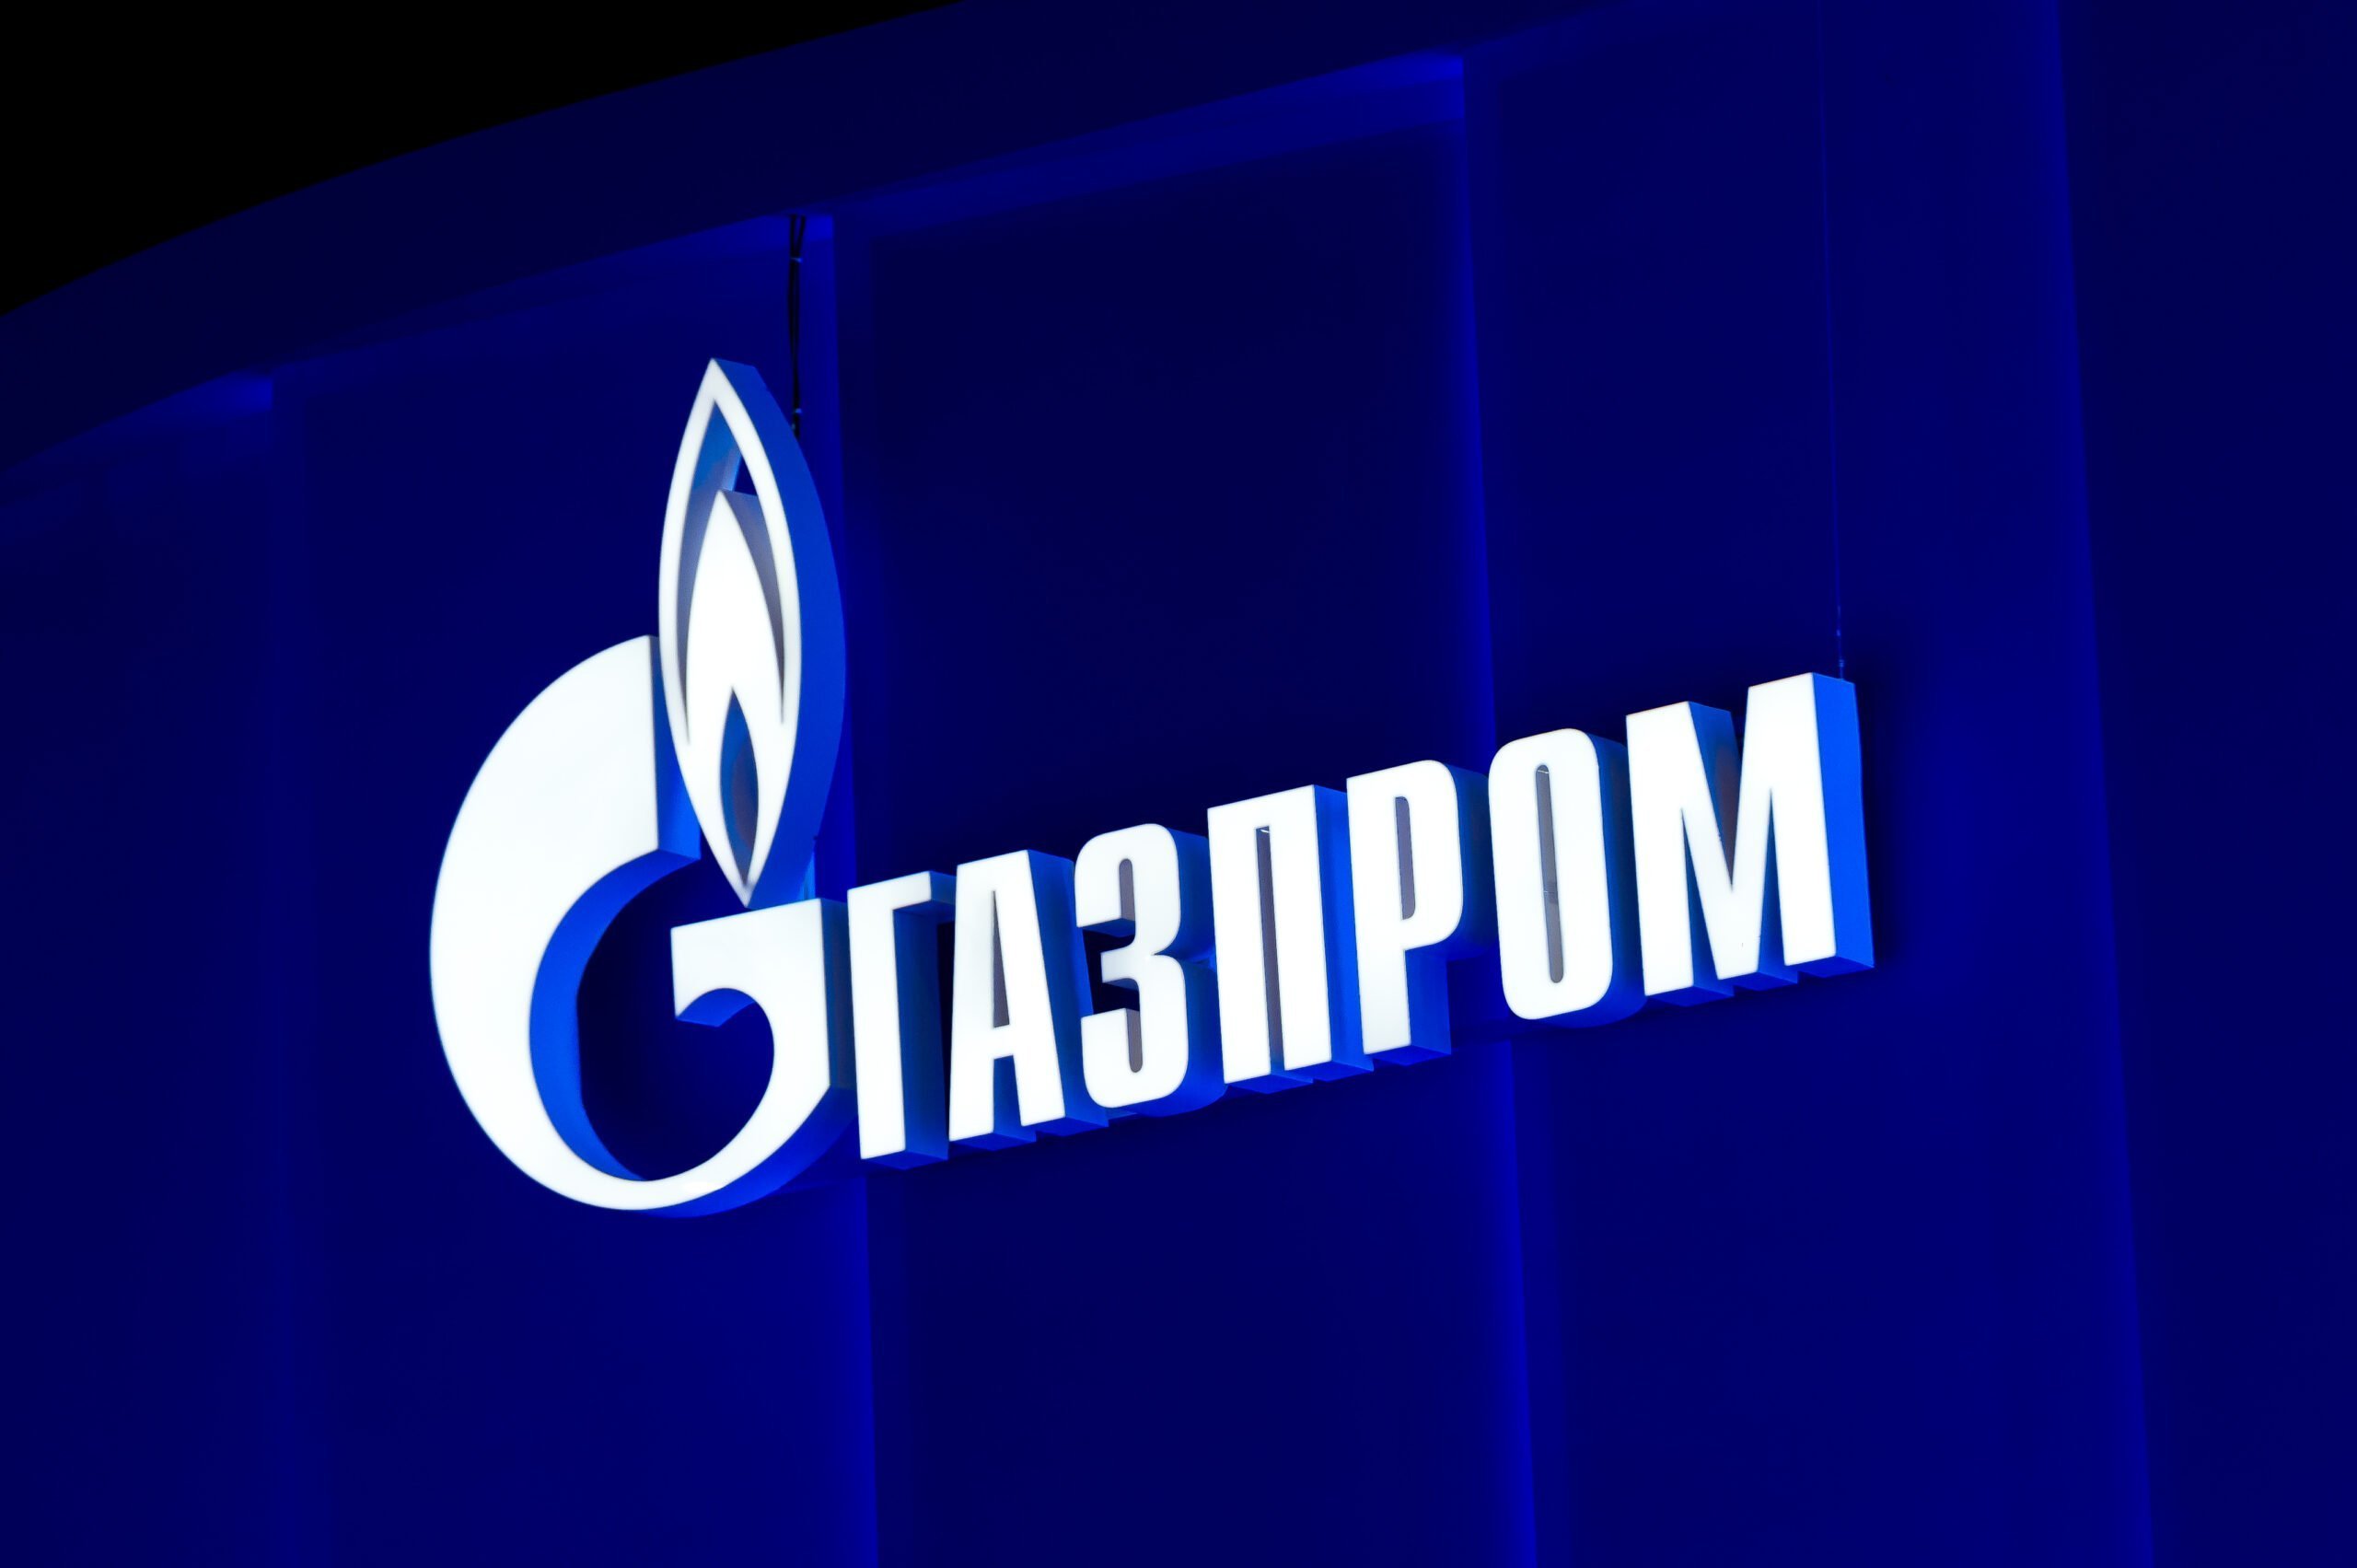 Газпром национальное достояние